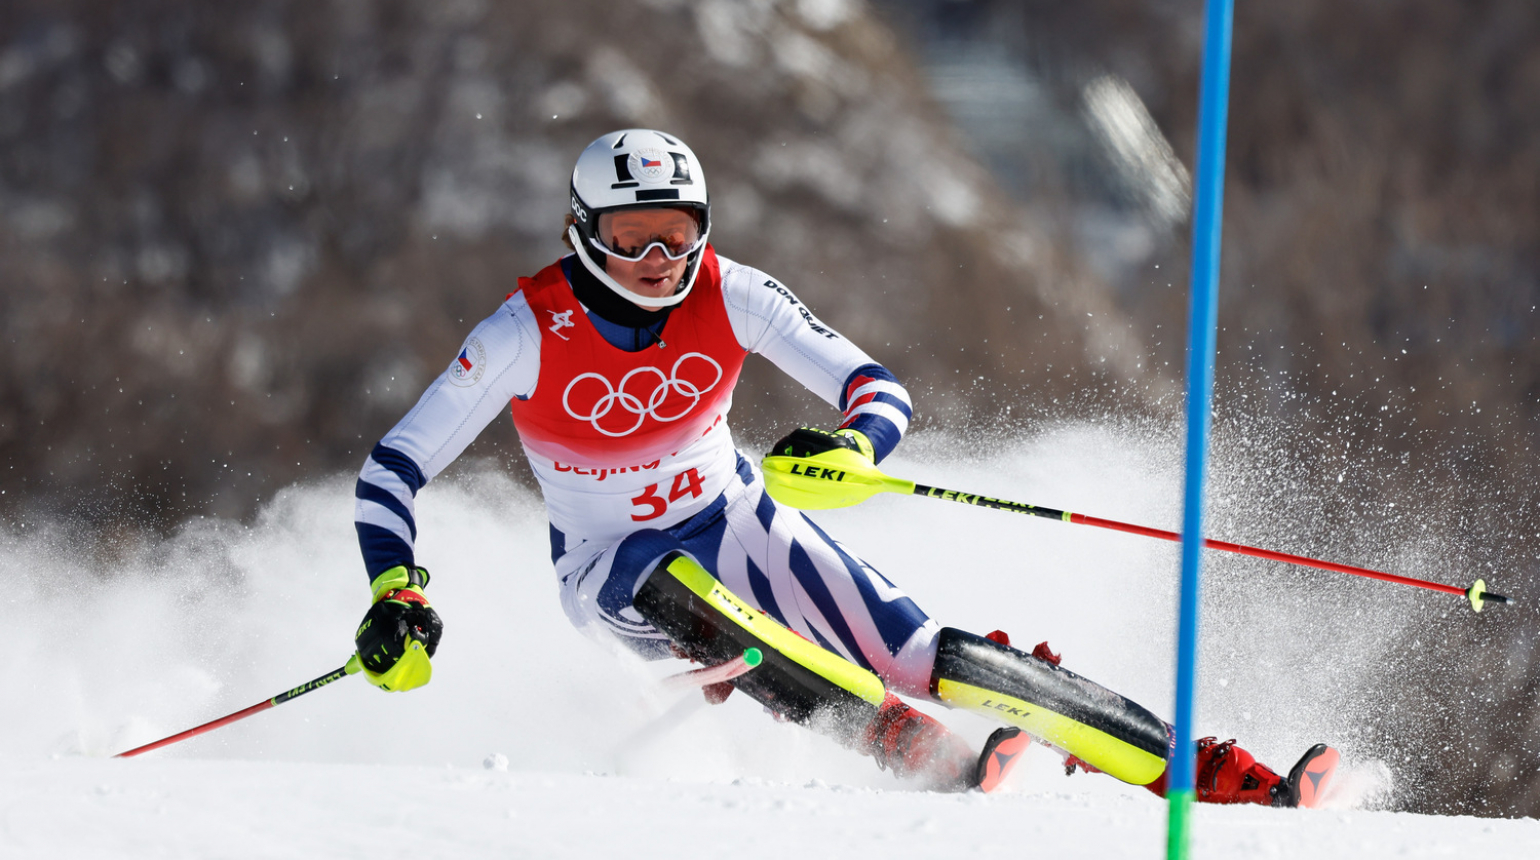 Olympijským vítězem ve slalomu je Francouz Noel. Zabystřan s Krýzlem nedokončili první kolo